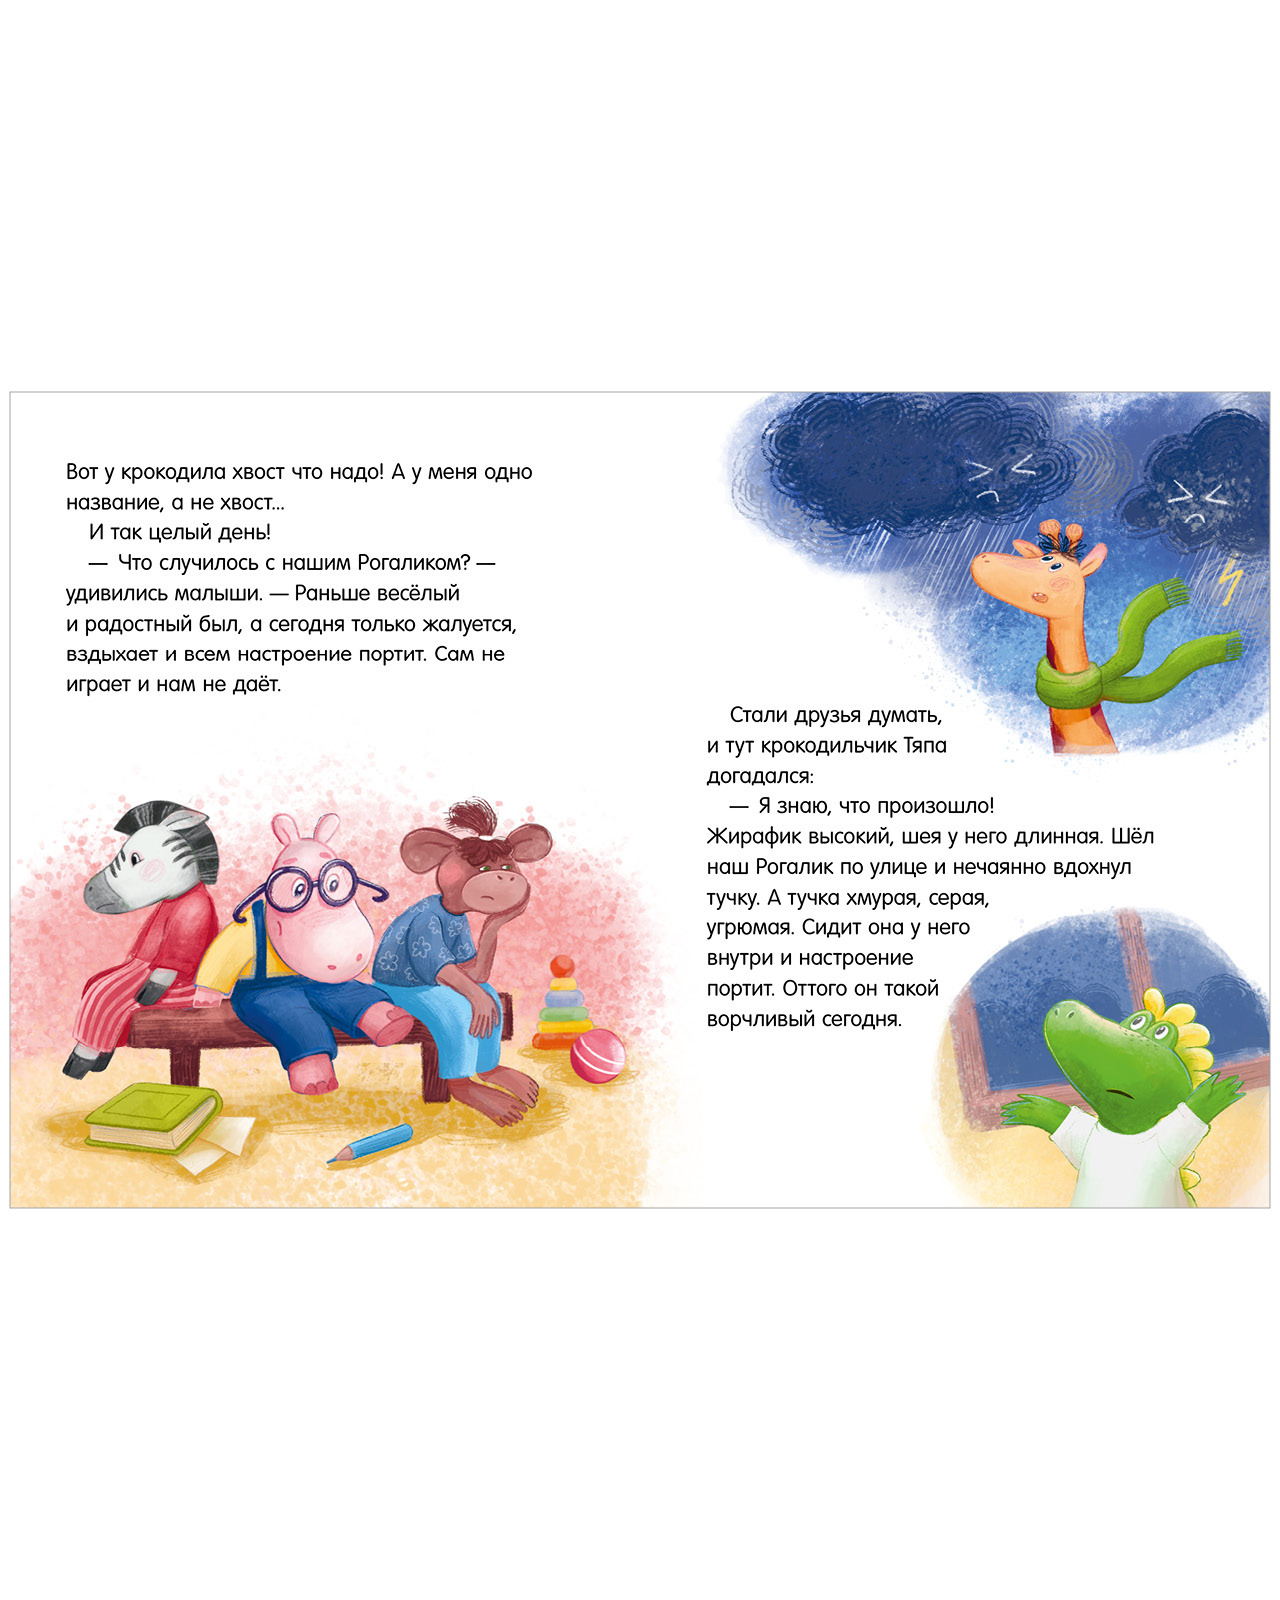 Мягкая книжка для детей своими руками | Шитье & DIY | Дзен